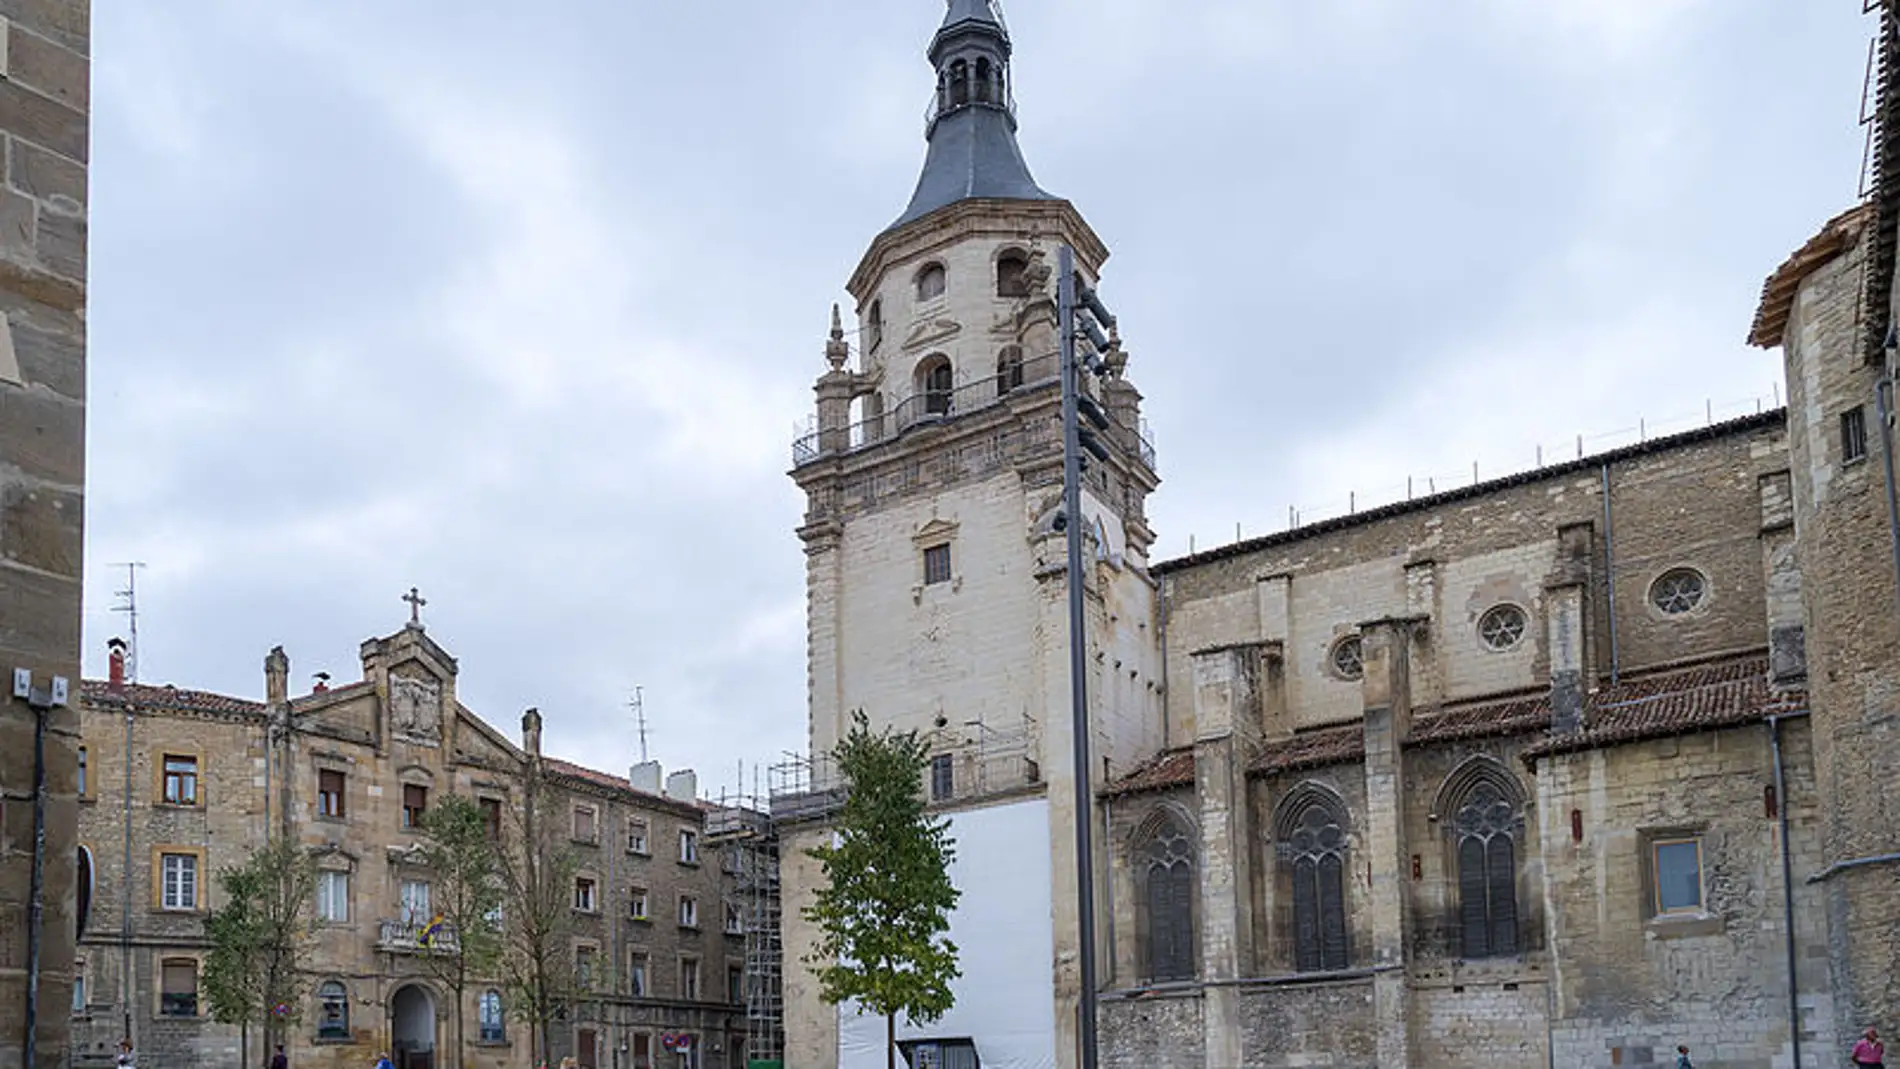 Catedral de Santa María de Vitoria-Gasteiz: historia y datos curiosos que te sorprenderán